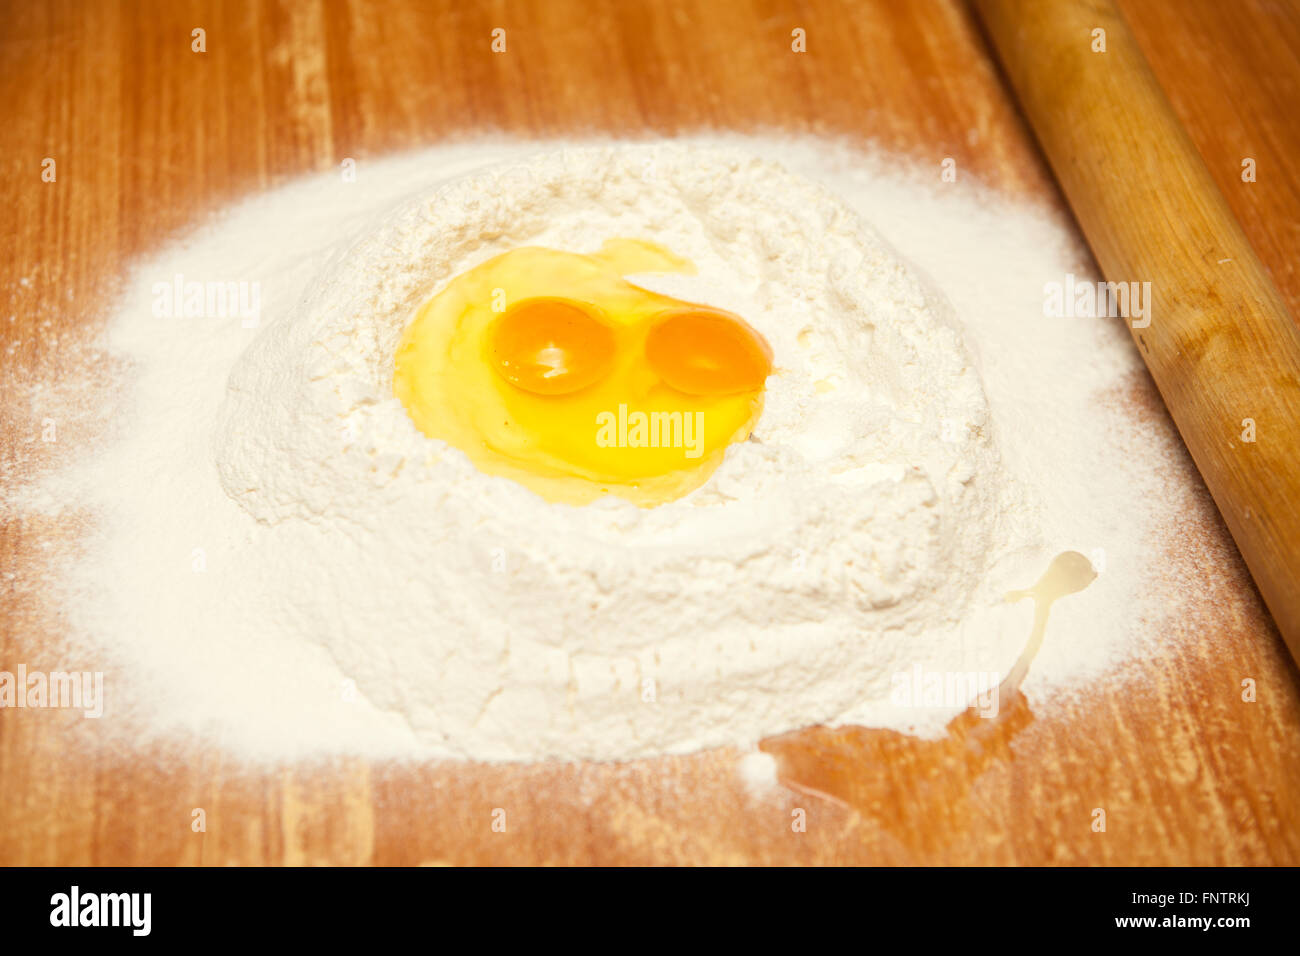 Uova crude nella farina su una tavola di legno Foto Stock